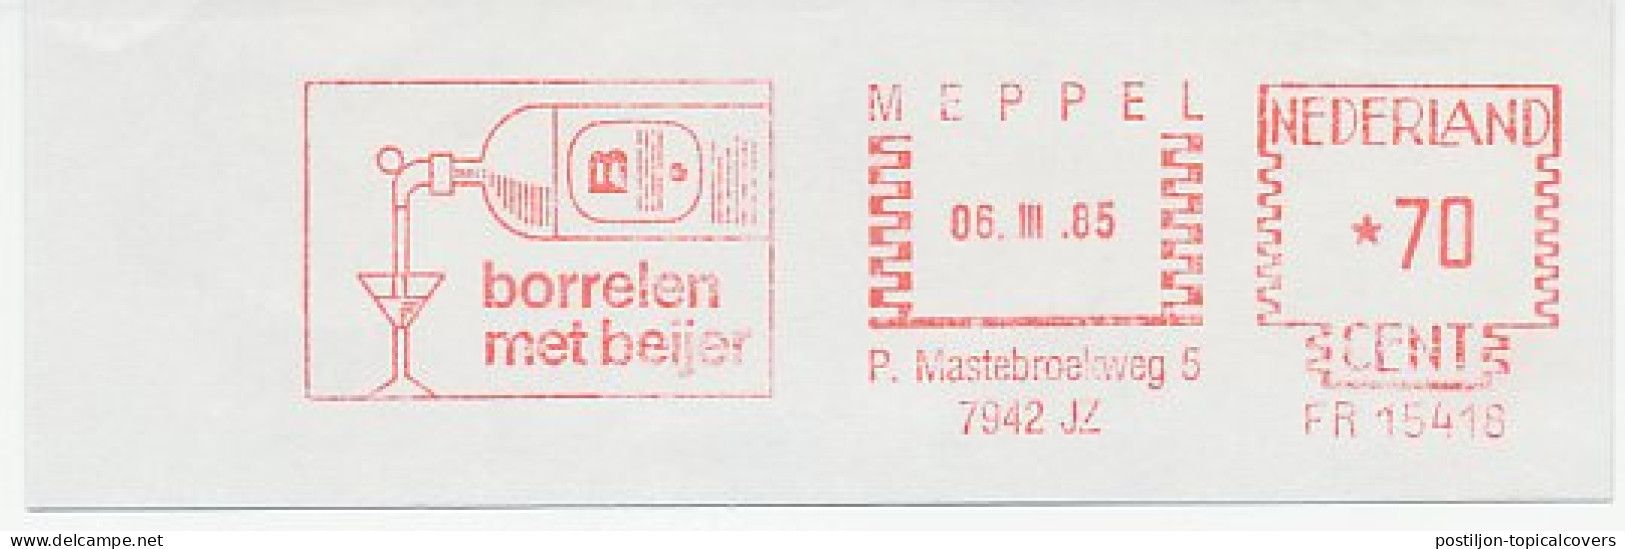 Meter Cut Netherlands 1985 Alcohol - Liquor - Wein & Alkohol